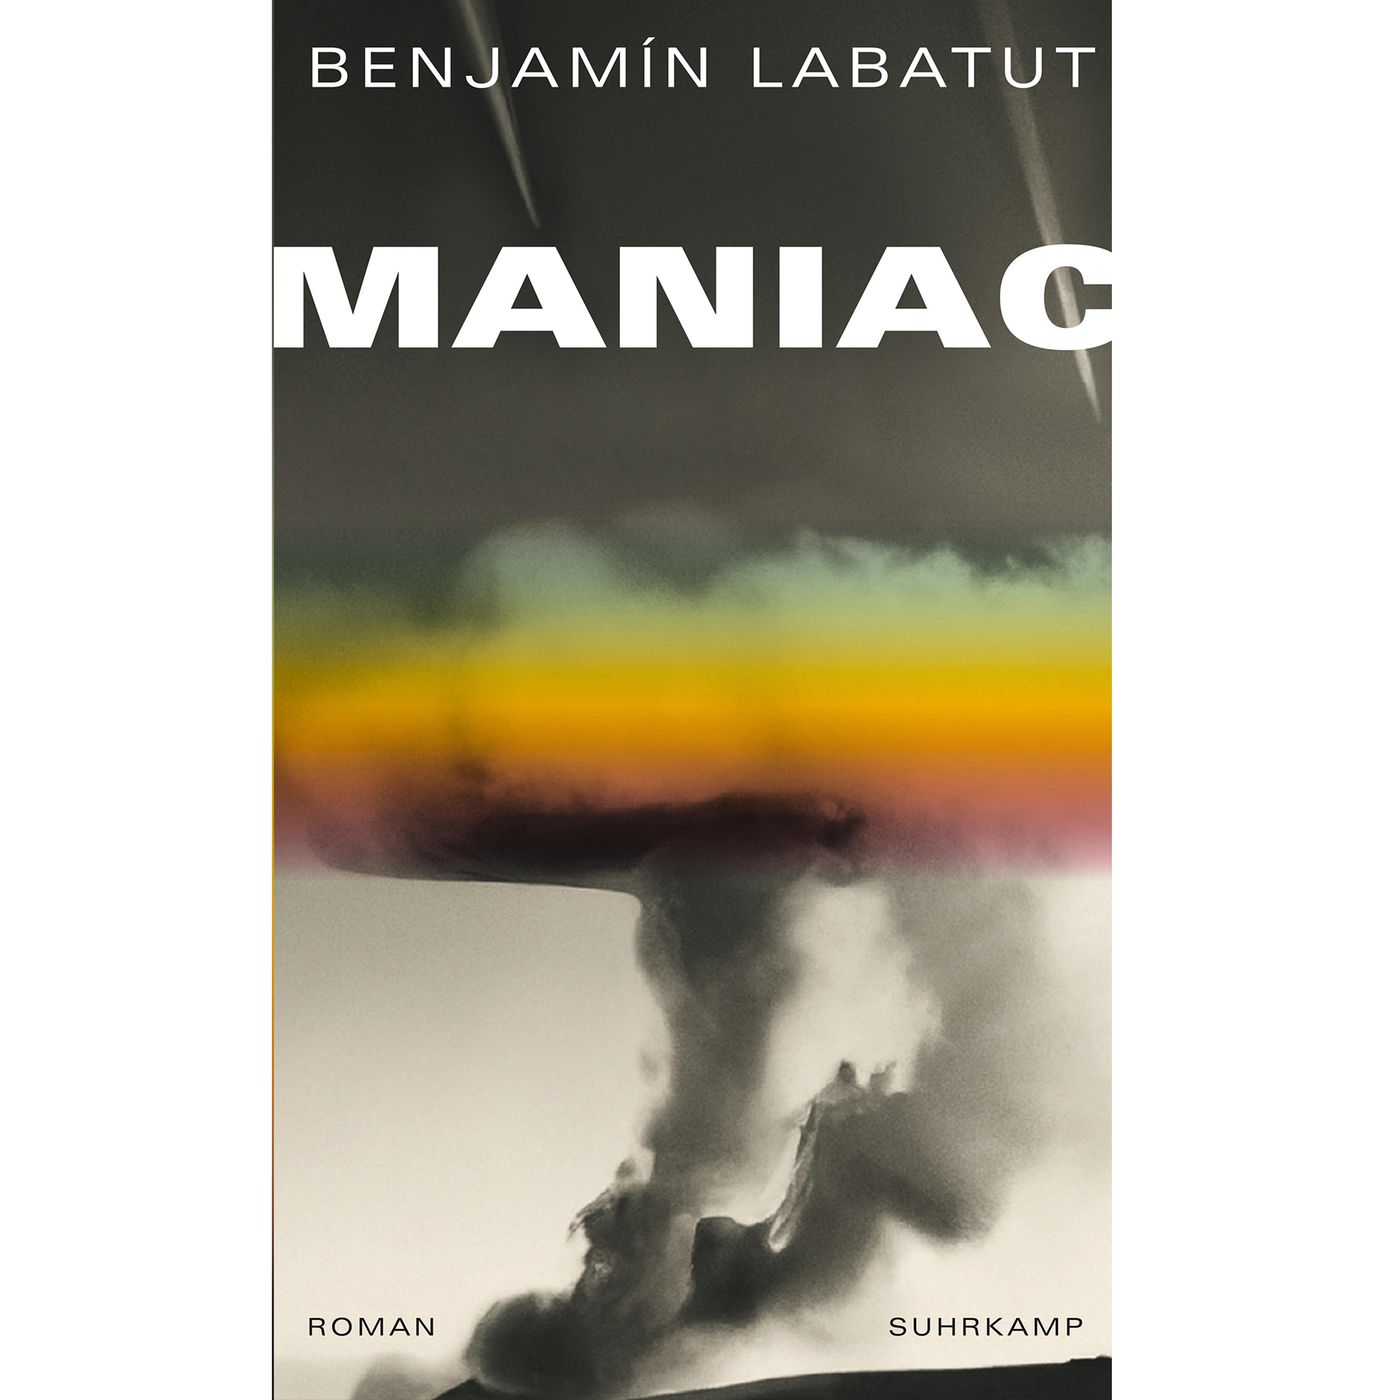 Maniac von Benjamin Labatut - Bücher - Kultur - WDR